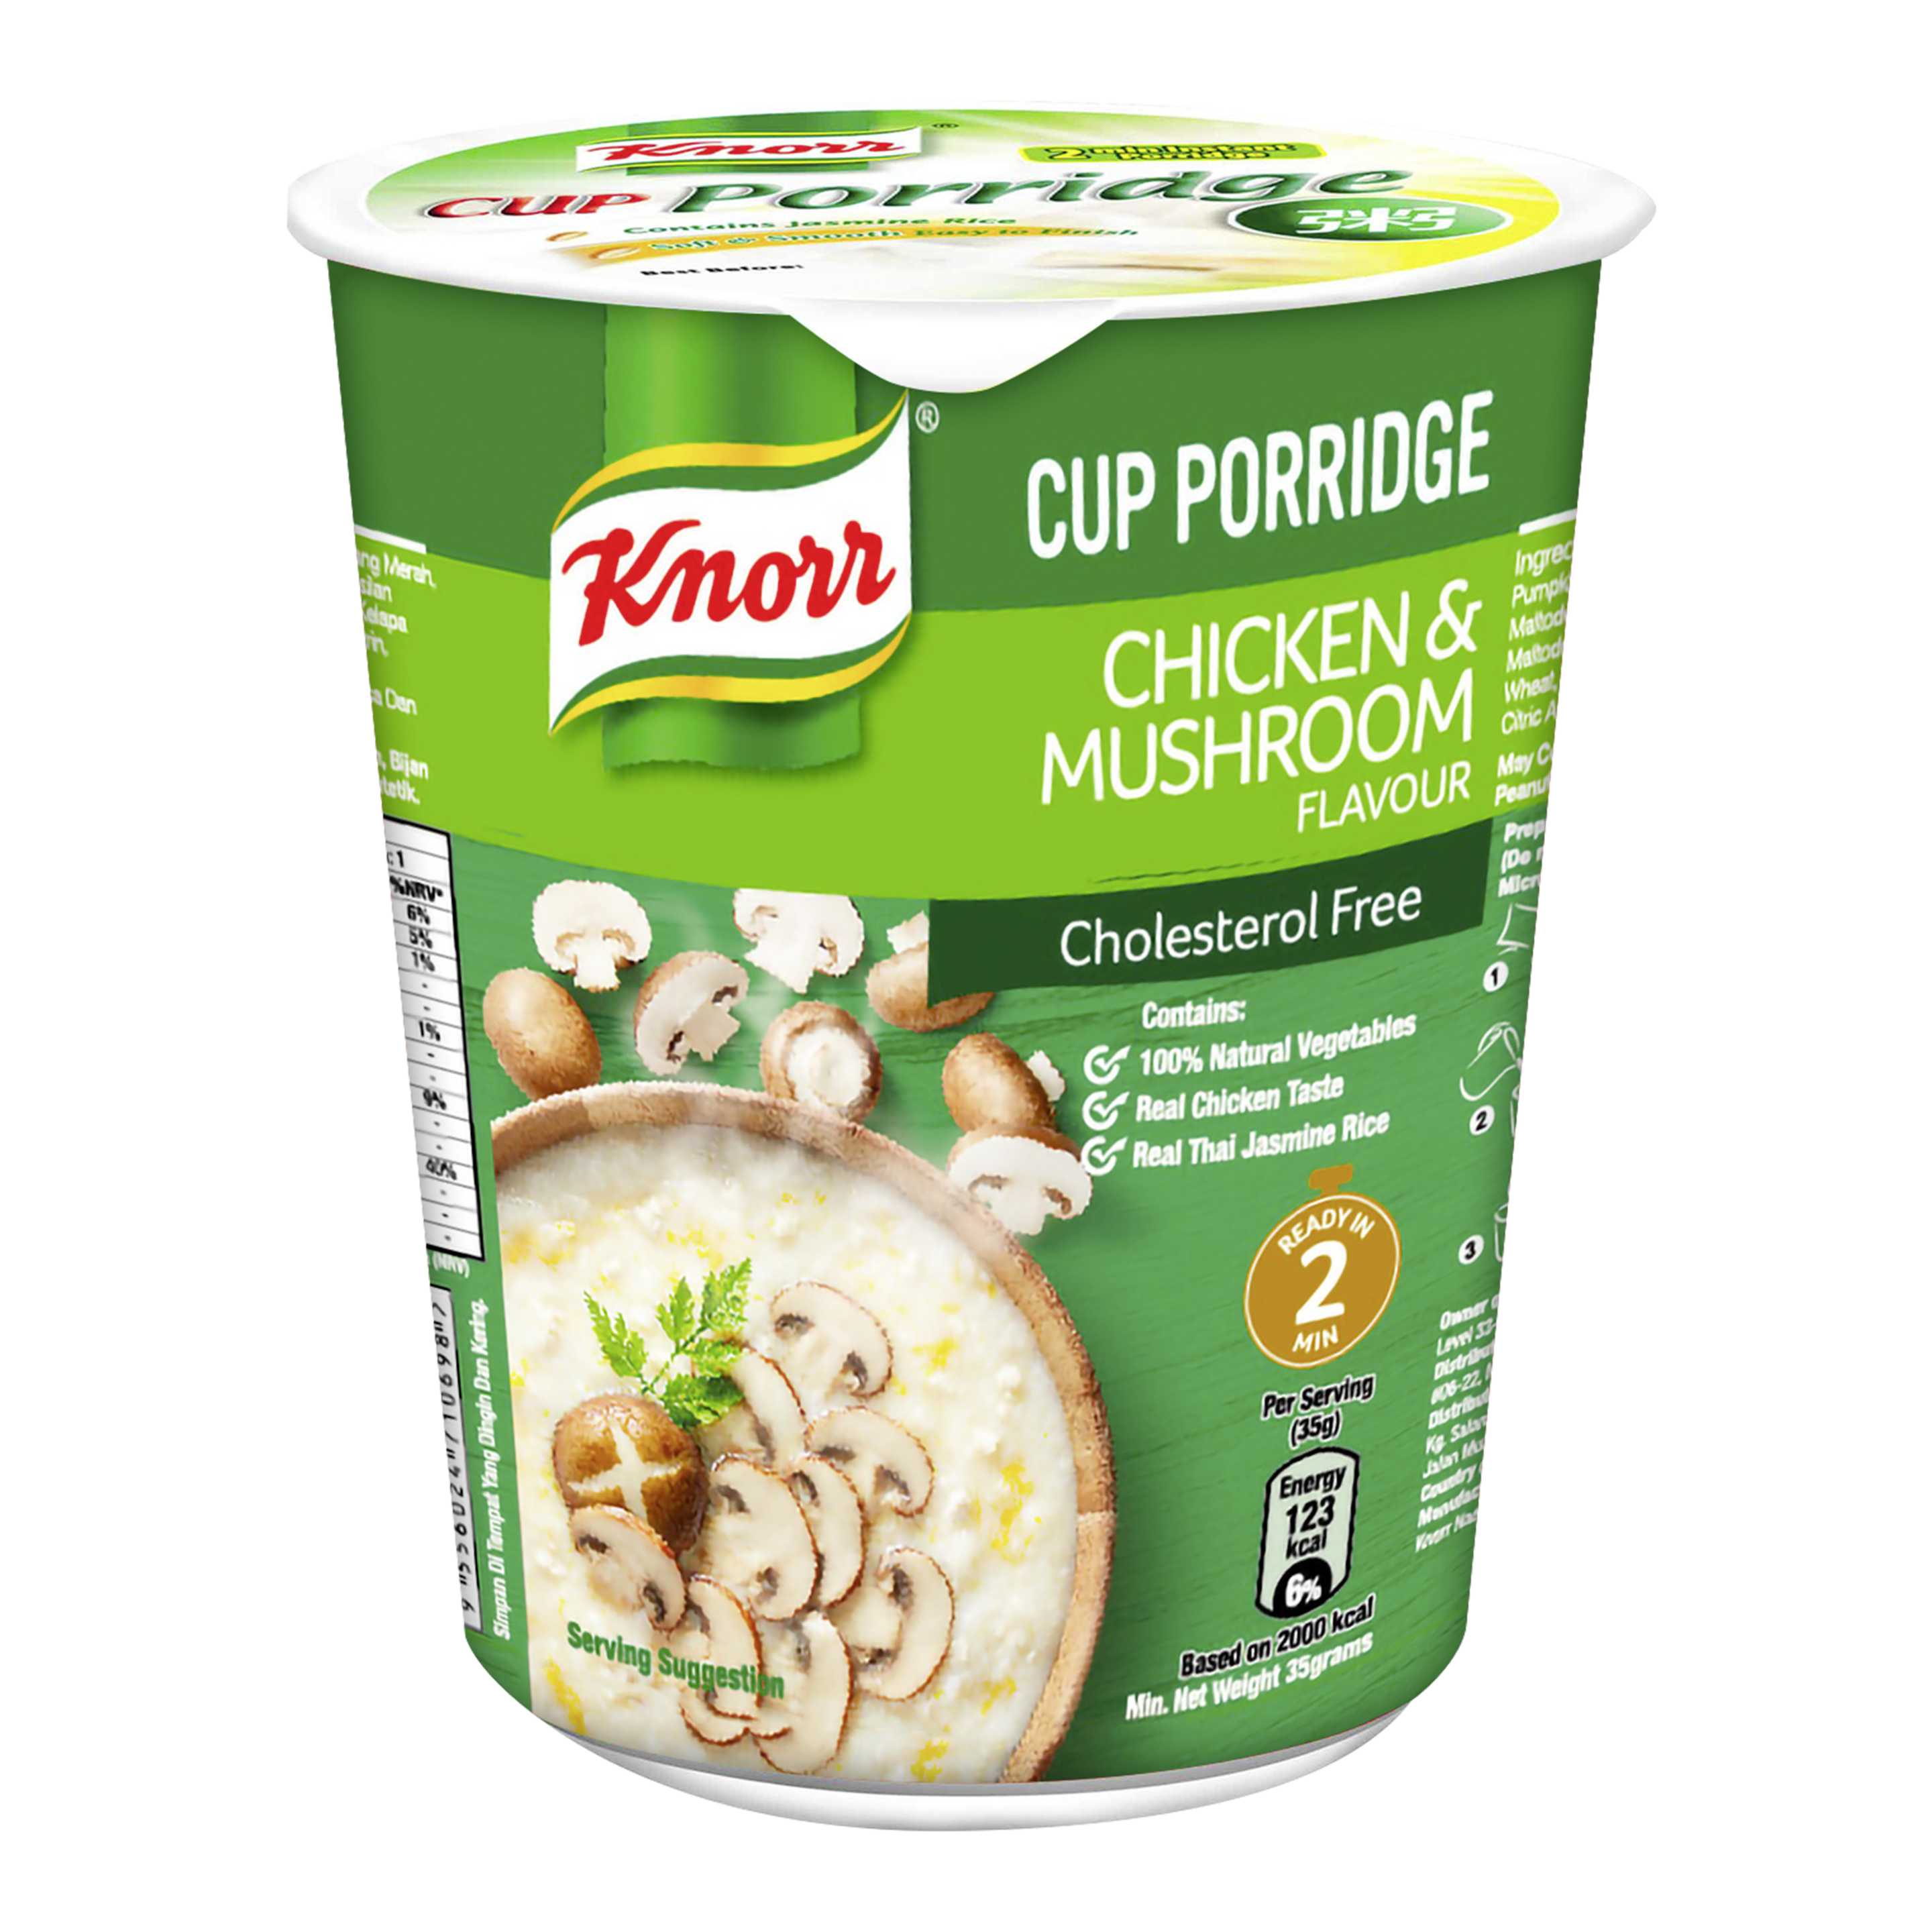 Chicken & Mushroom Porridge